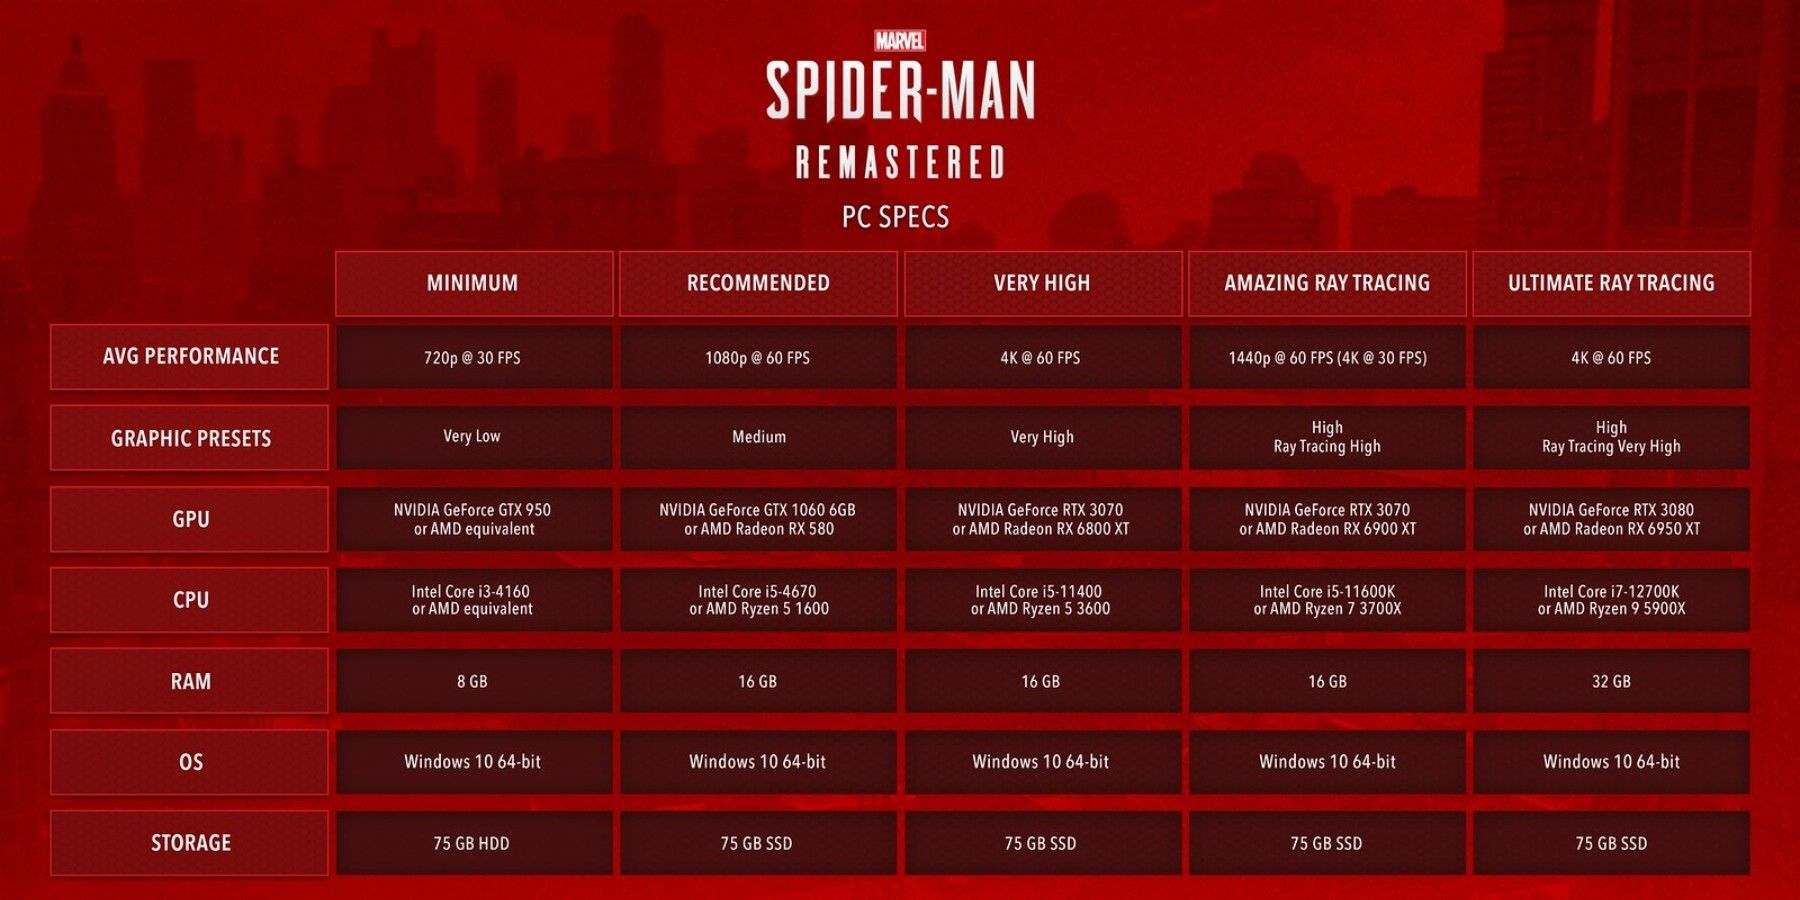 Spider-Man PC Specs